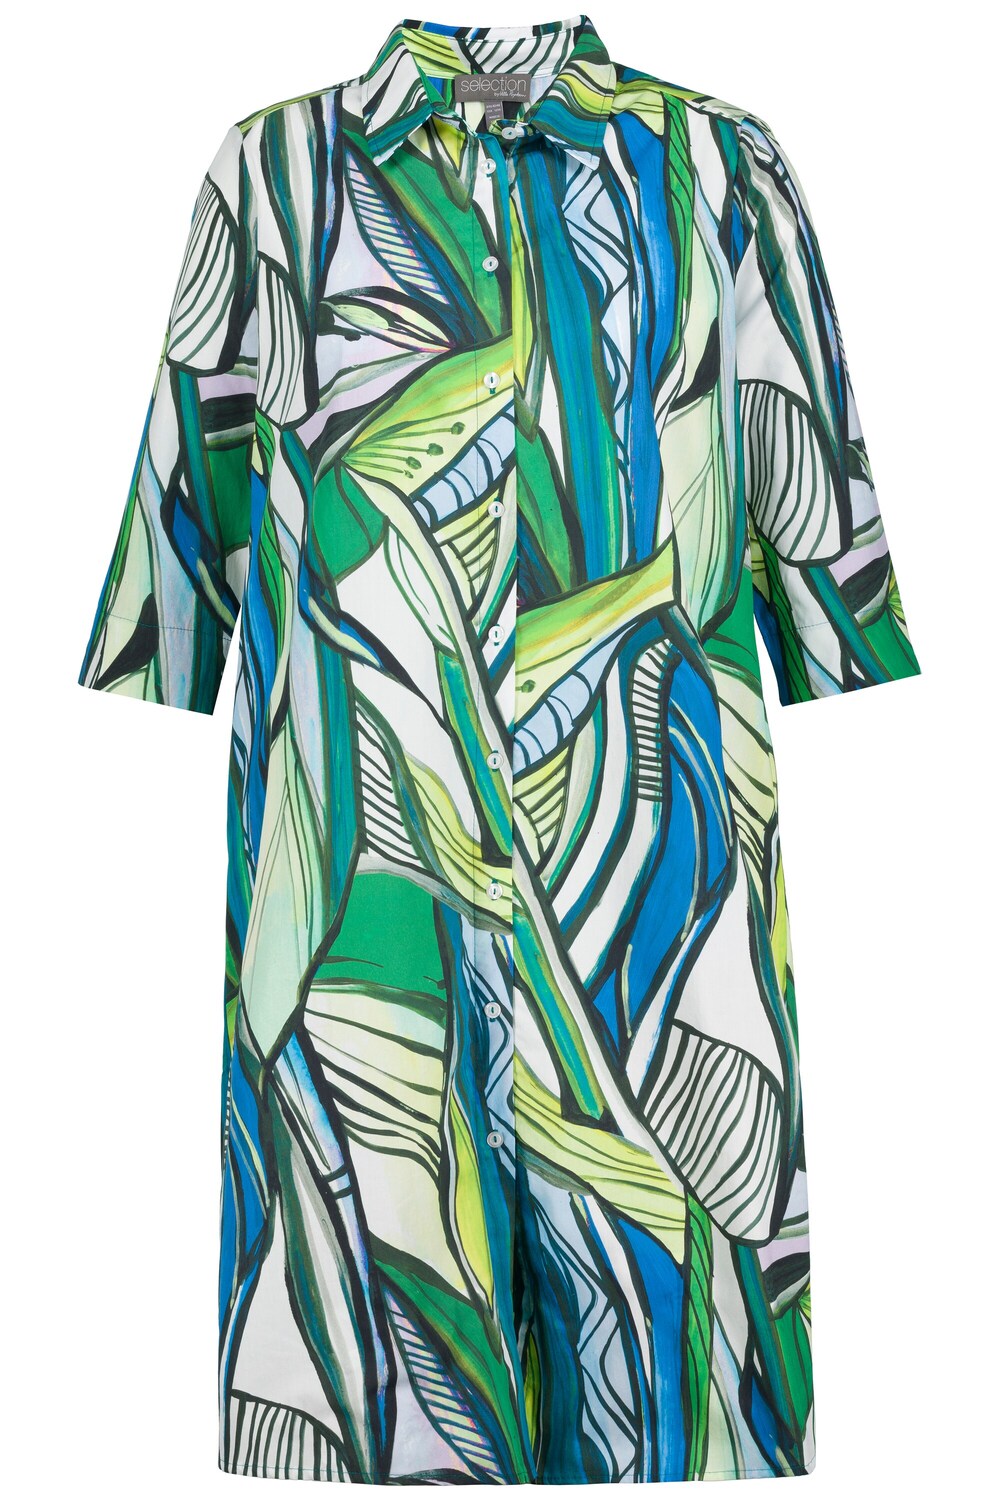 

Рубашка-платье Ulla Popken, пестрый зеленый